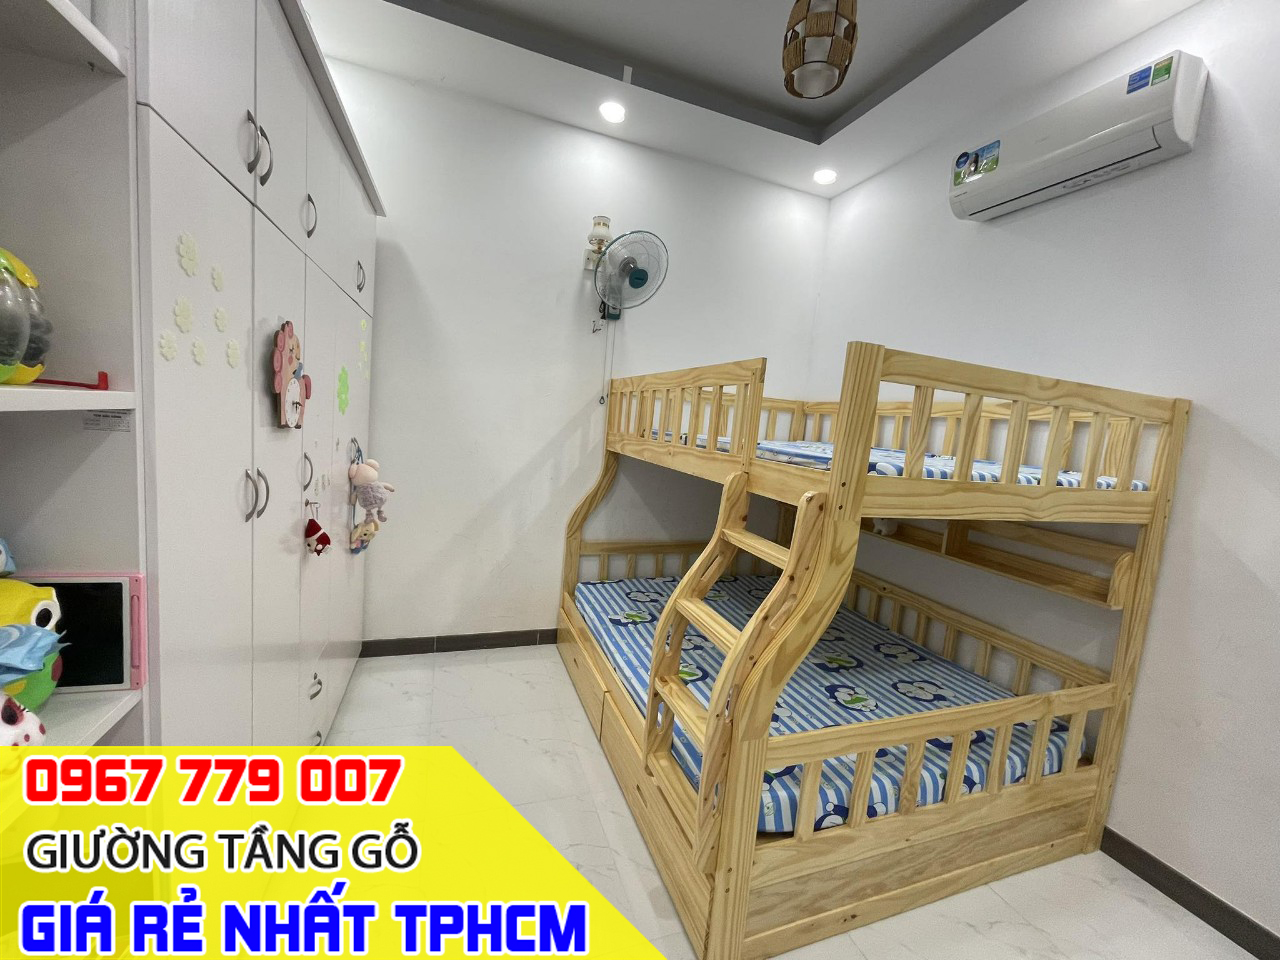 HOT - Các mẫu giường tầng đẹp ráp thực tế tại nhà khách đặt mua TPHCM 09-2023